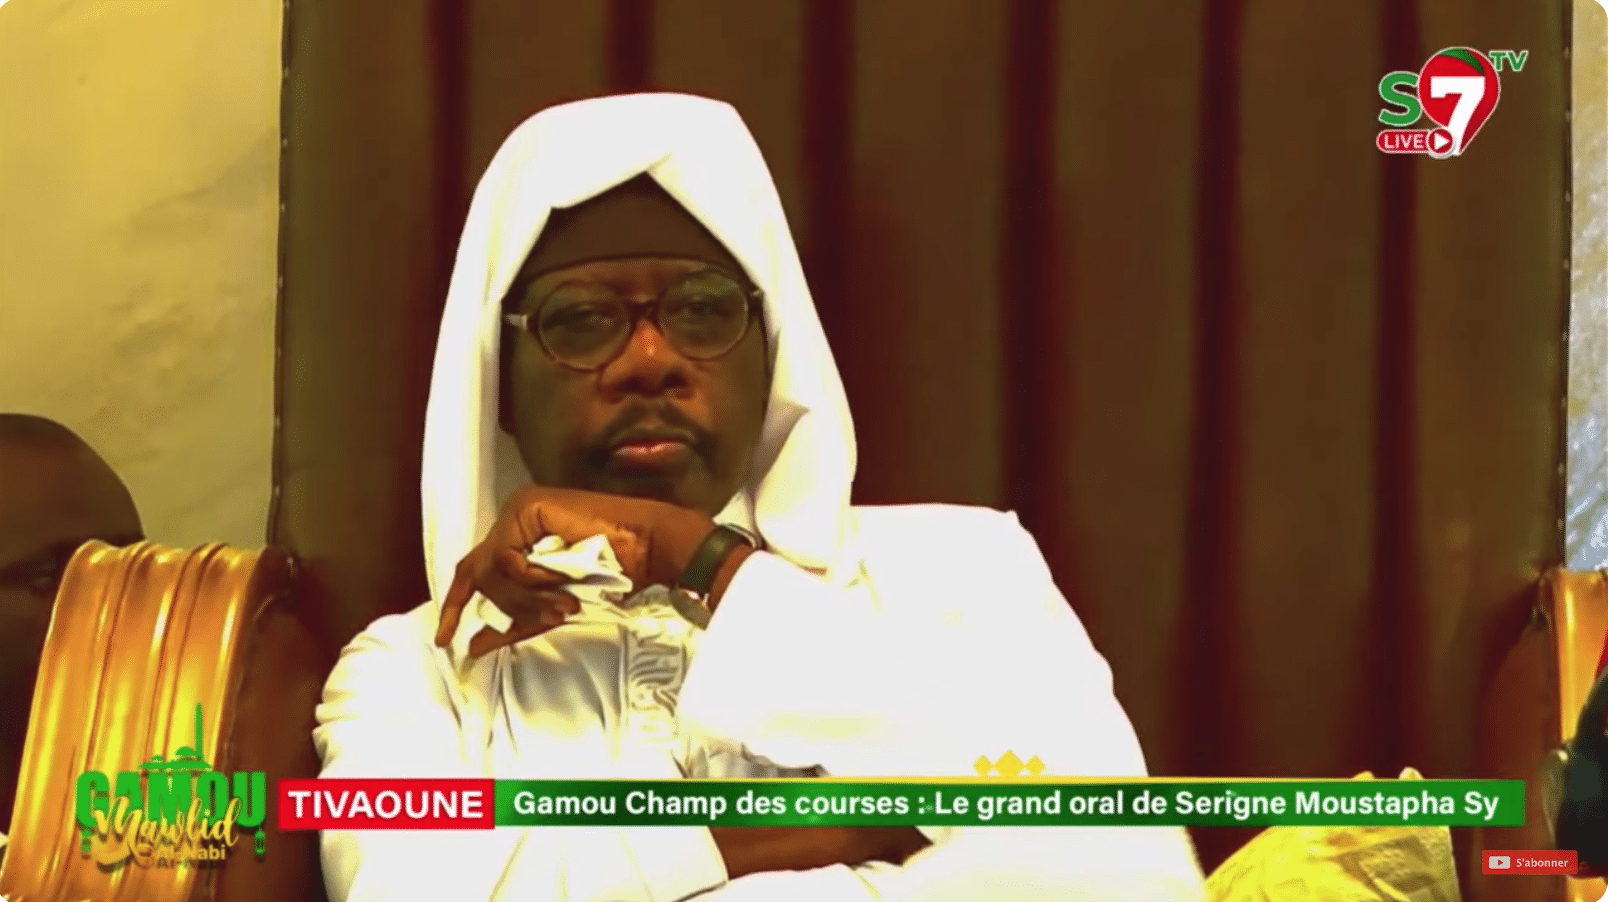 Direct - Gamou Champ des courses : Le grand oral de Serigne Moustapha Sy